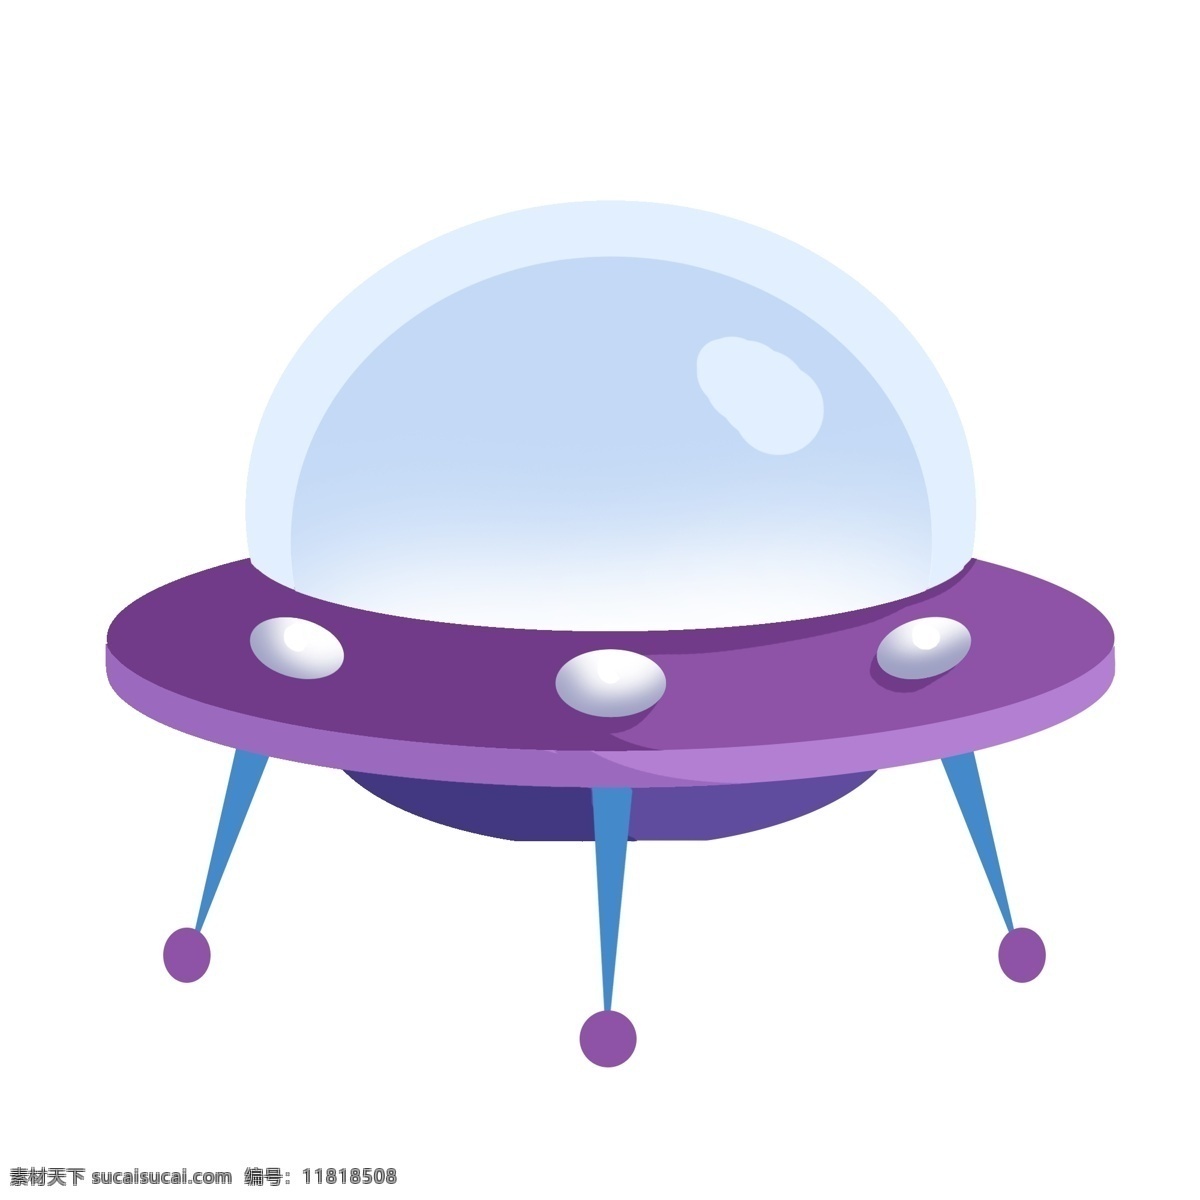 世界 航天 日 紫色 飞碟 插画 紫色的飞碟 航空飞碟 漂亮的飞碟 创意飞碟 立体飞碟 卡通飞碟